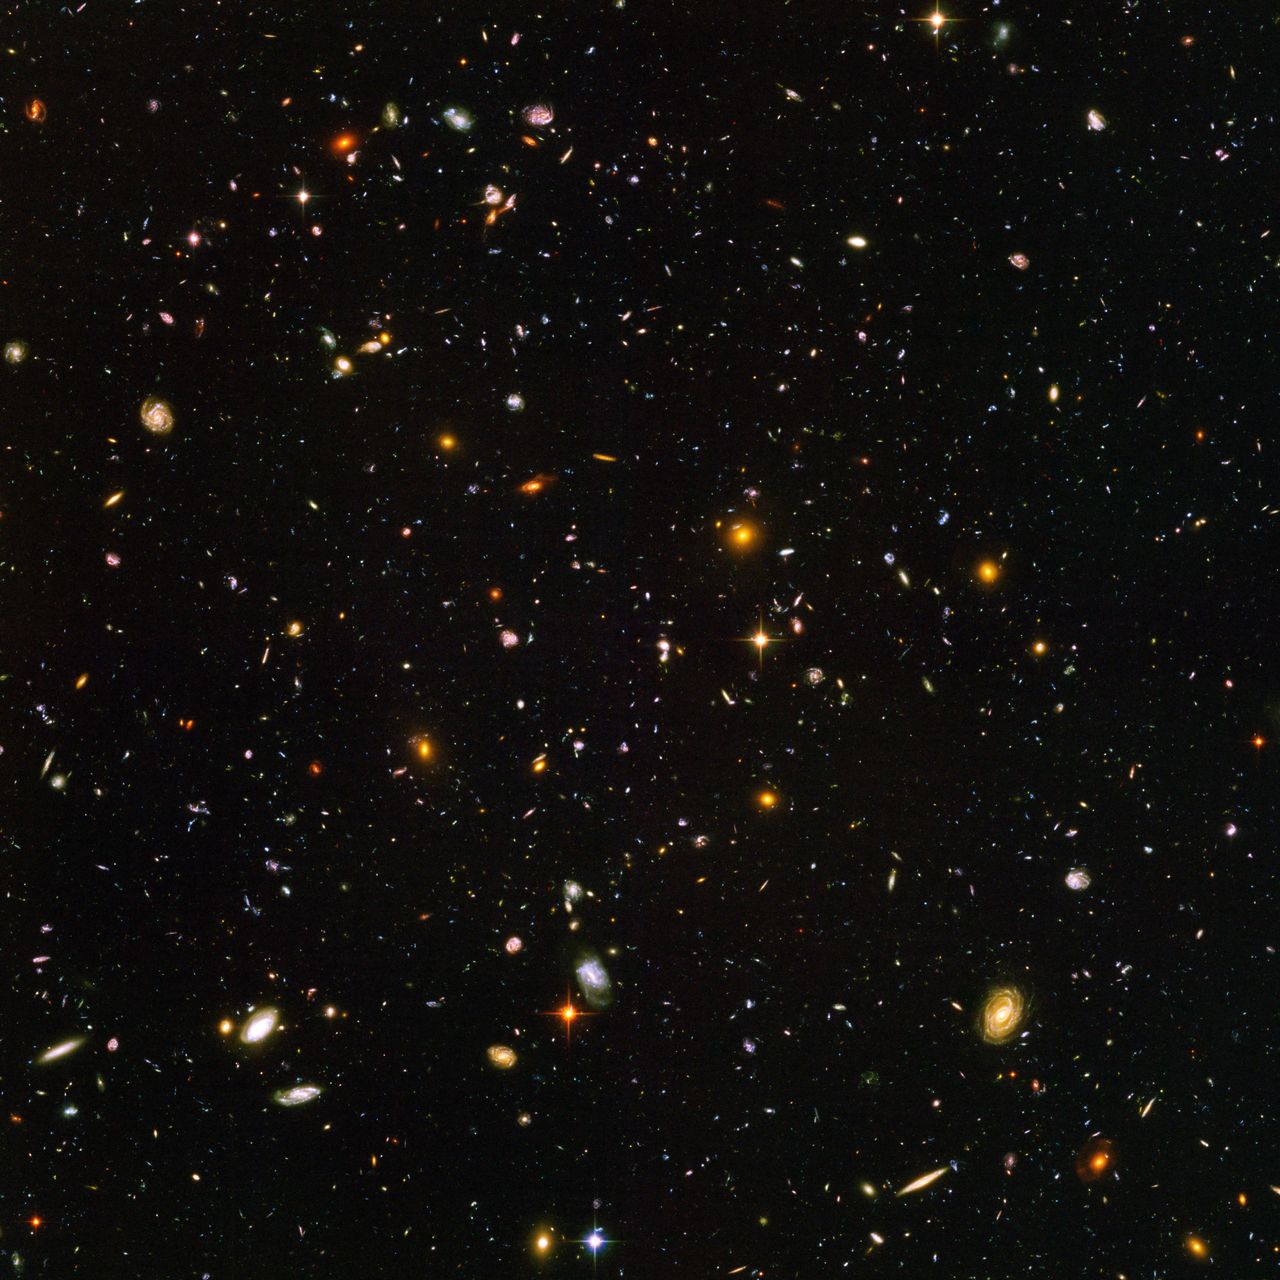 Questa vista di quasi 10.000 galassie è chiamata "Il campo ultra-profondo di Hubble".  Lo scatto include galassie di diverse età, dimensioni, forme e colori.  Le galassie più piccole e più rosse, circa 100, potrebbero essere tra le più lontane conosciute, essendo esistite quando l'universo aveva solo 800 milioni di anni.  Le prime galassie - ellissoidi ed ellissoidi più grandi, più luminosi e ben definiti - si sono sviluppate circa un miliardo di anni fa, quando l'universo aveva 13 miliardi di anni.  L'immagine ha richiesto 800 esposizioni ed è stata scattata sulle 400 orbite di Hubble.  La durata complessiva dell'esposizione è stata di 11,3 giorni, tra il 24 settembre 2003 e il 16 gennaio 2004. [S. Beckwith (STScI) and the HUDF Team - NASA/ESA]